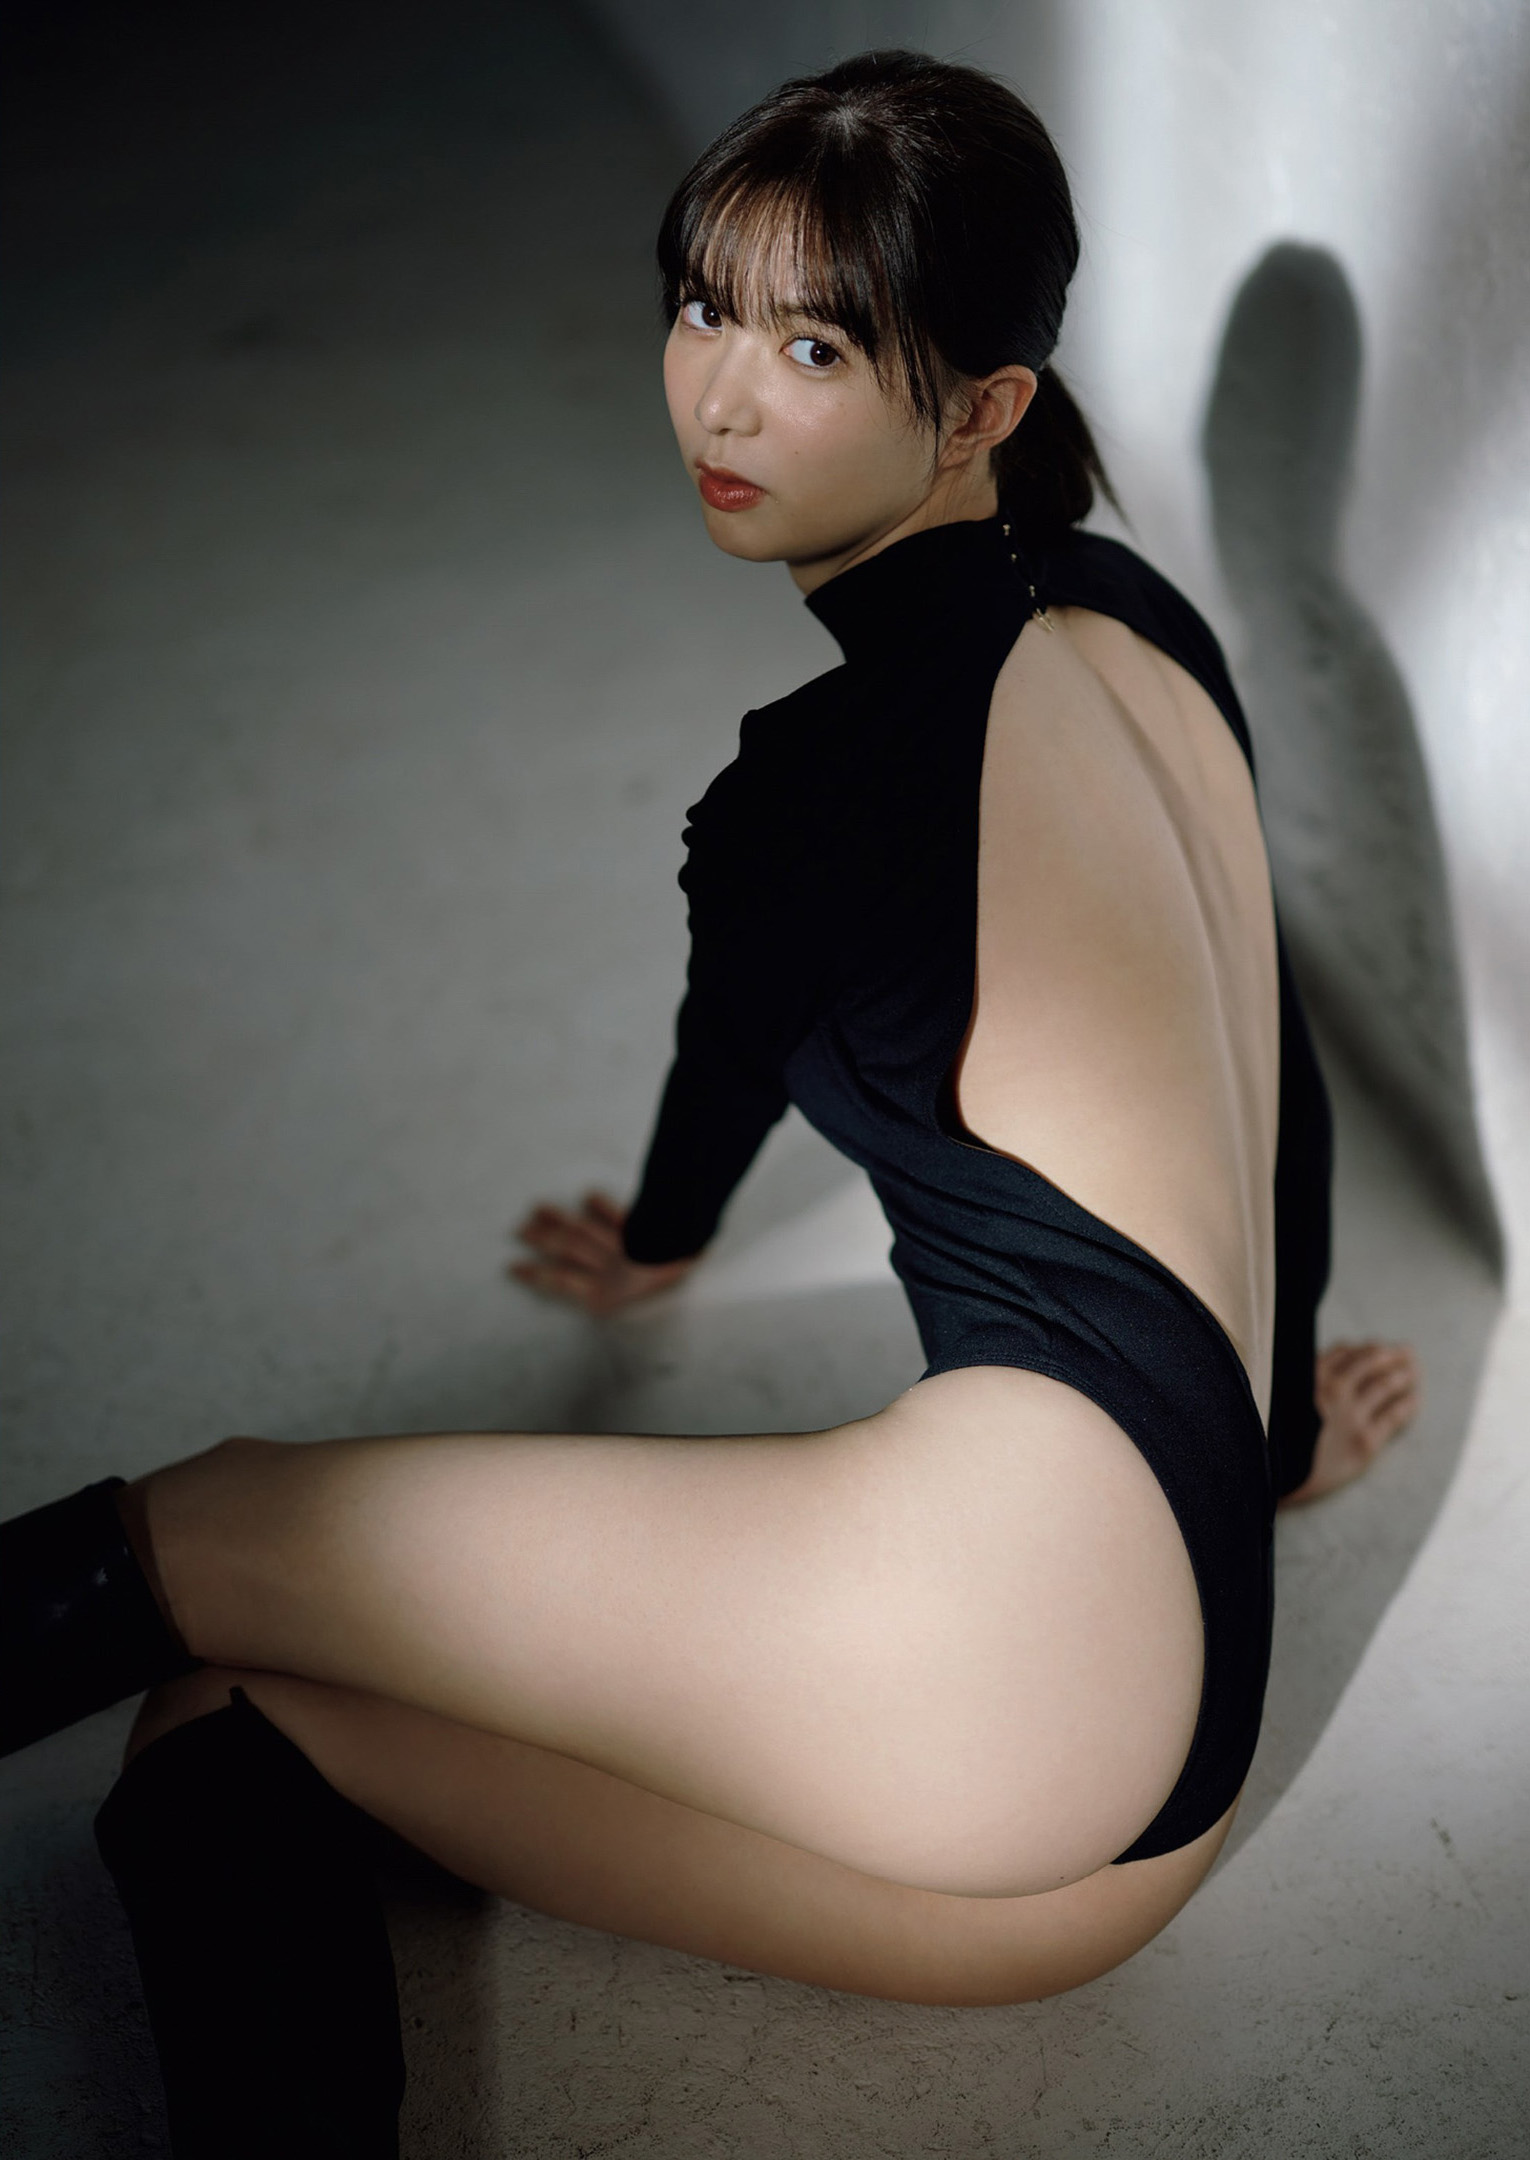 Riko Matsudaira 松平璃子, Weekly Playboy 2022 No.19 (週刊プレイボーイ 2022年19号)